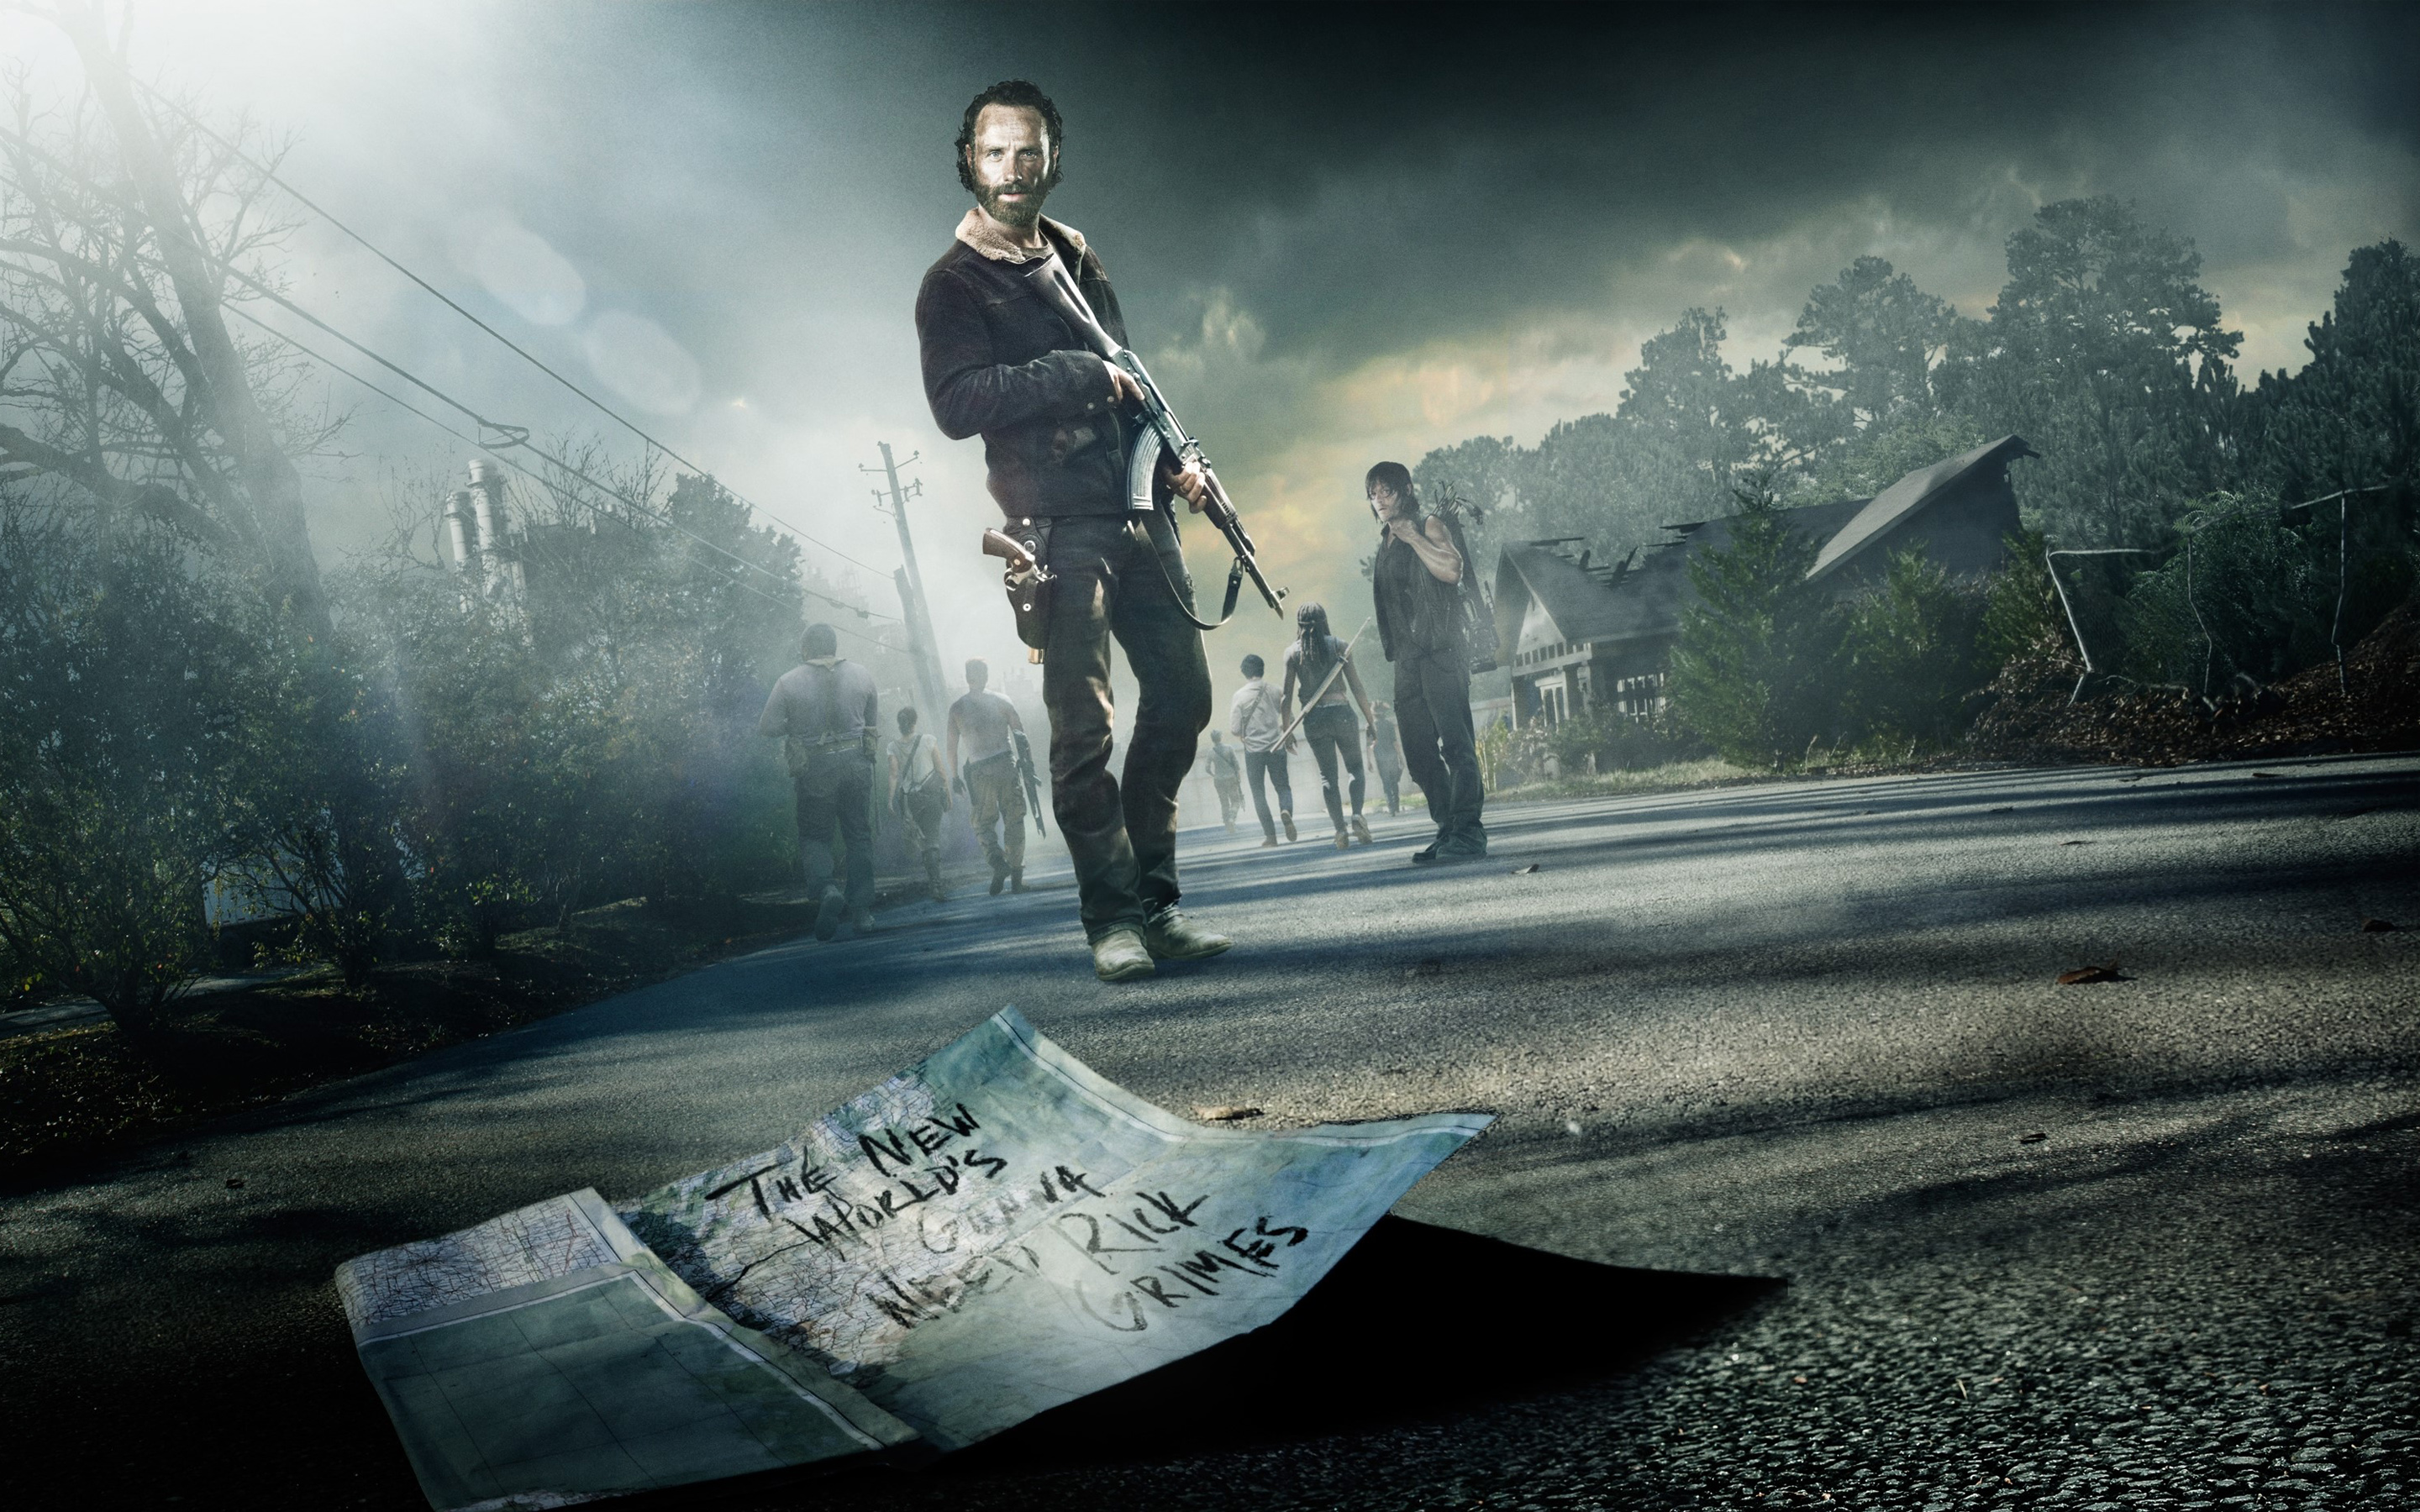  Walking Dead Season 5 Wallpaper   HD Wallpapers Ultra HD Wallpapers 2880x1800